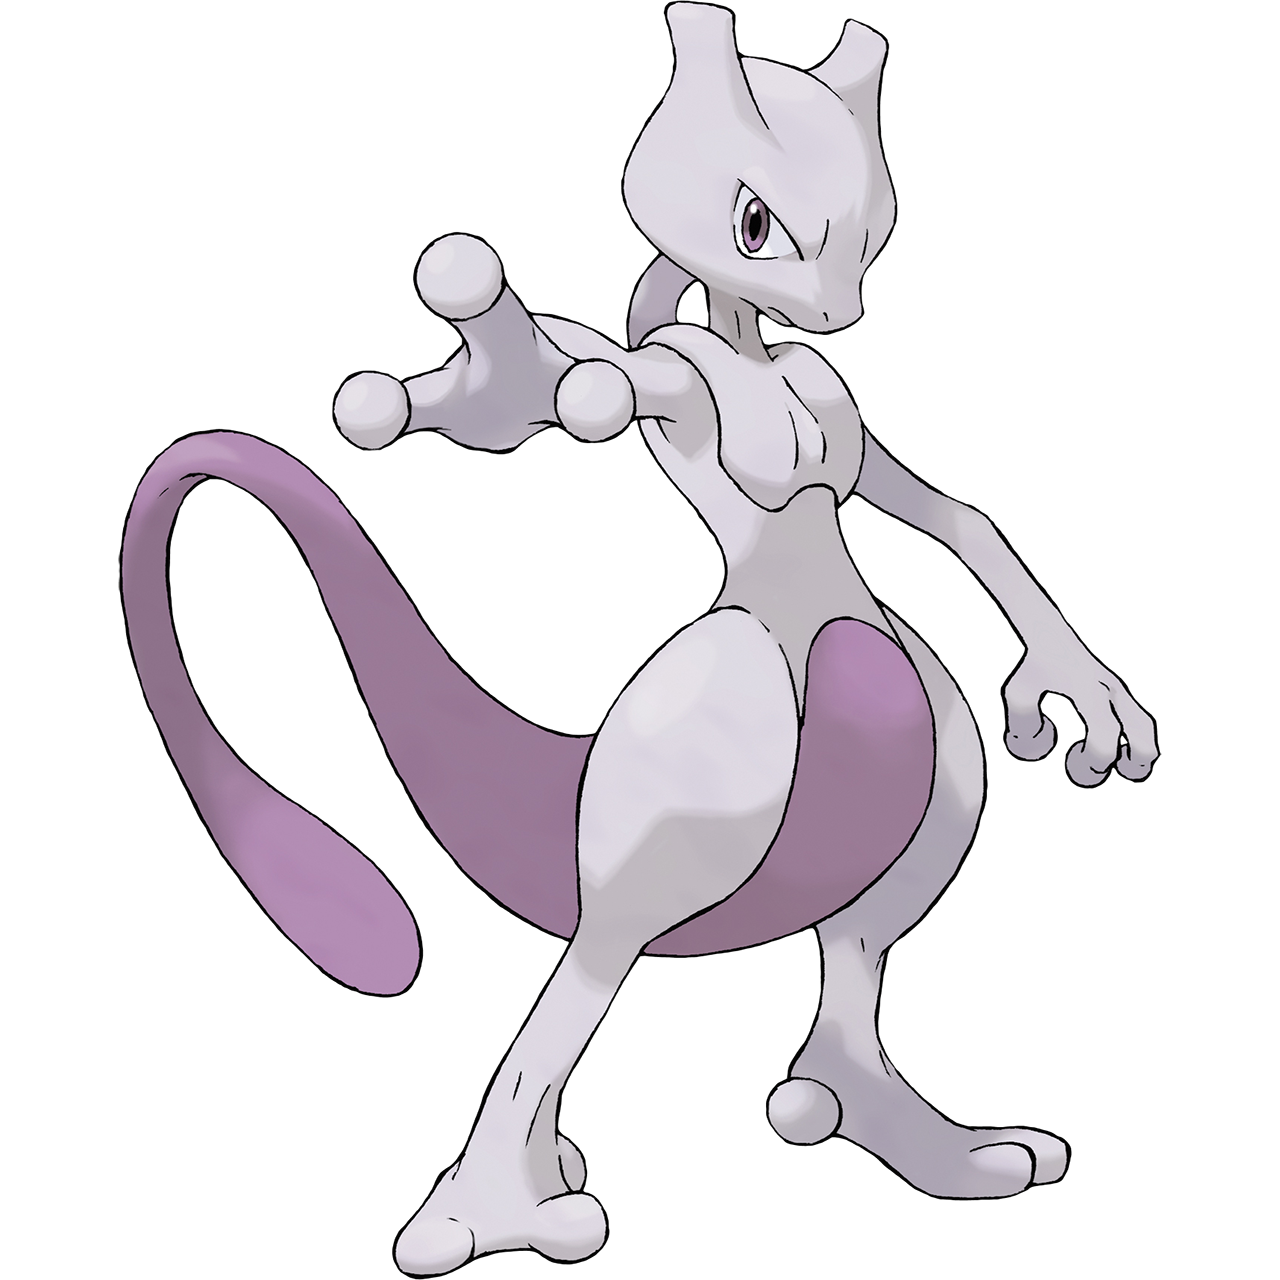 Mew (Pokémon), Pokémon Fire Ash Wiki